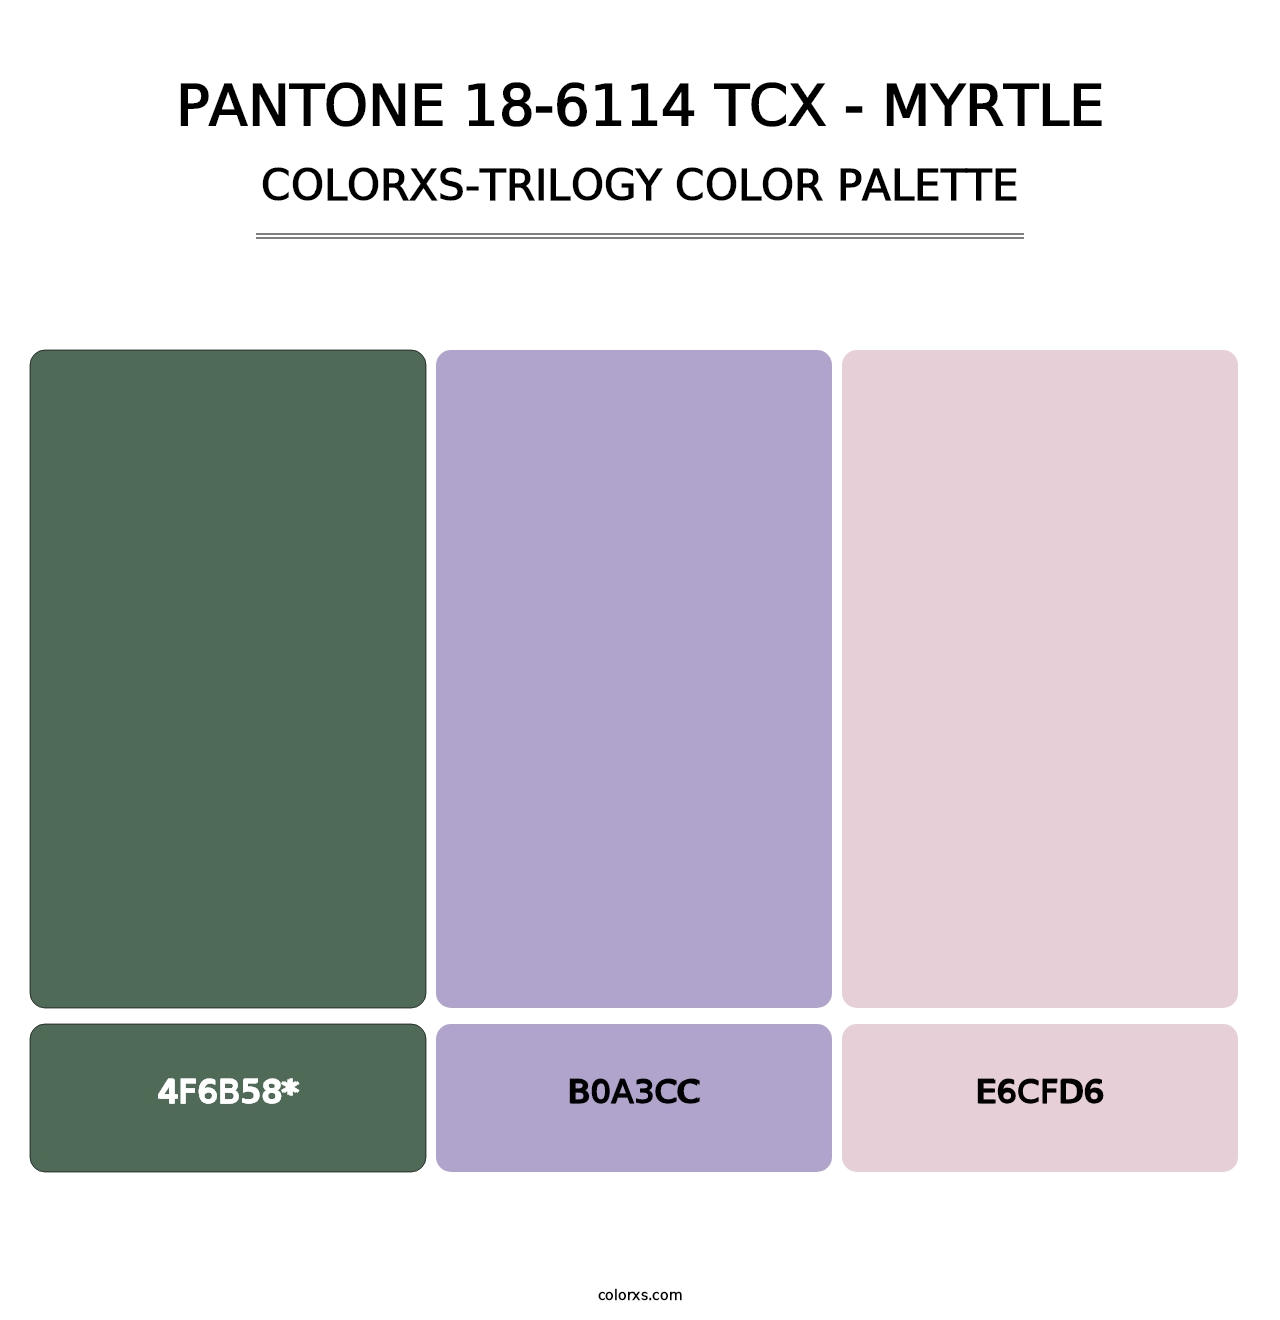 PANTONE 18-6114 TCX - Myrtle - Colorxs Trilogy Palette